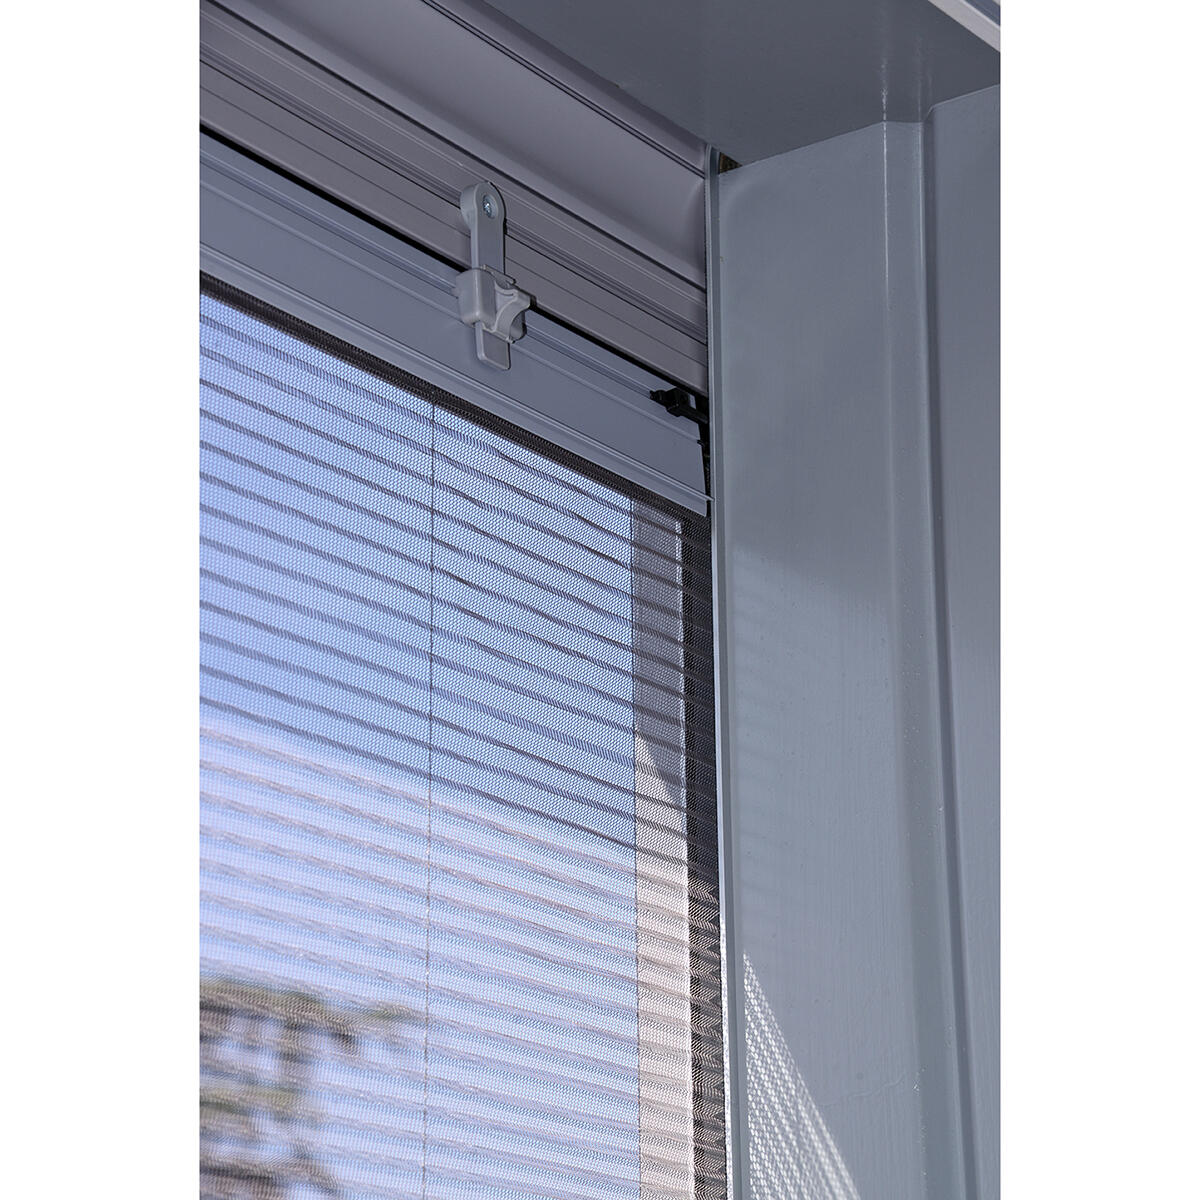 Zanzariera avvolgibile UP per finestra L 160 x H 160 cm bianco - 4